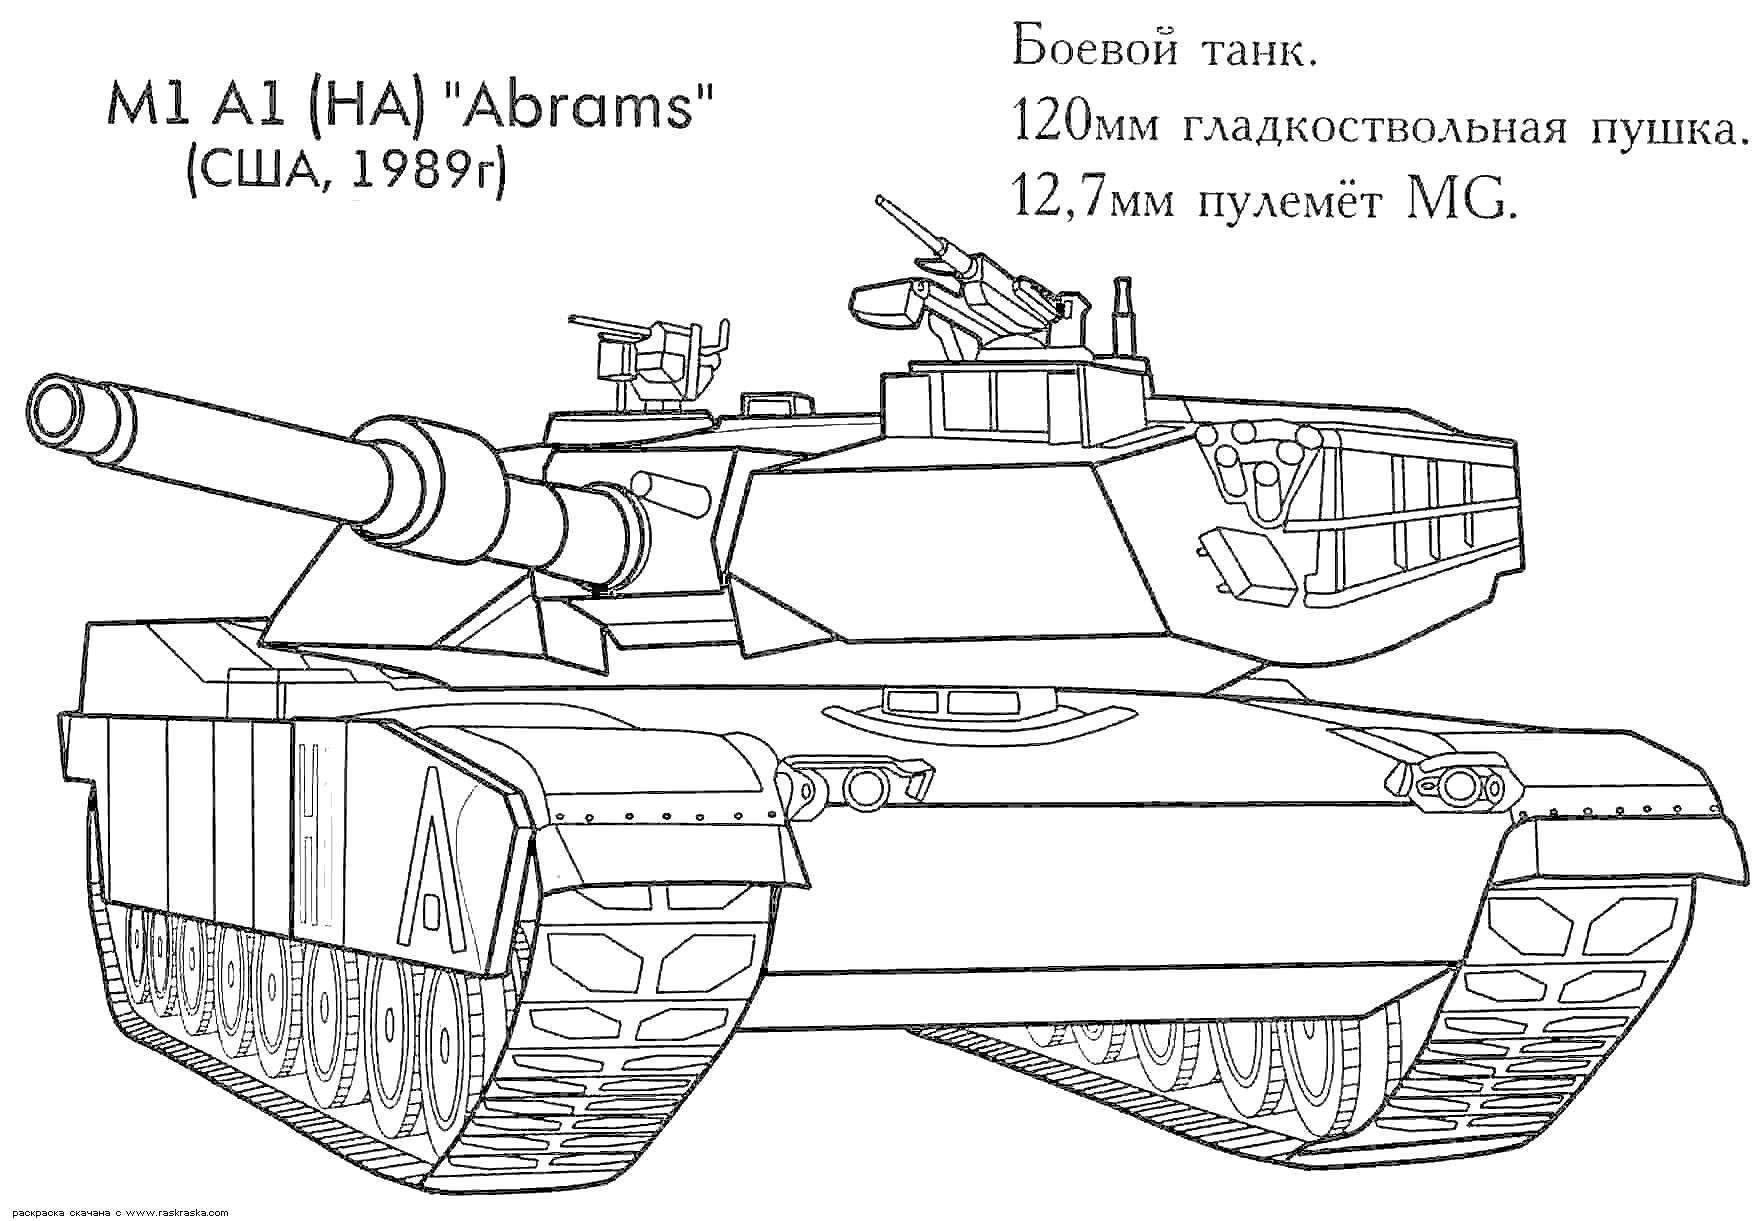 Боевой танк M1 A1 (HA) 